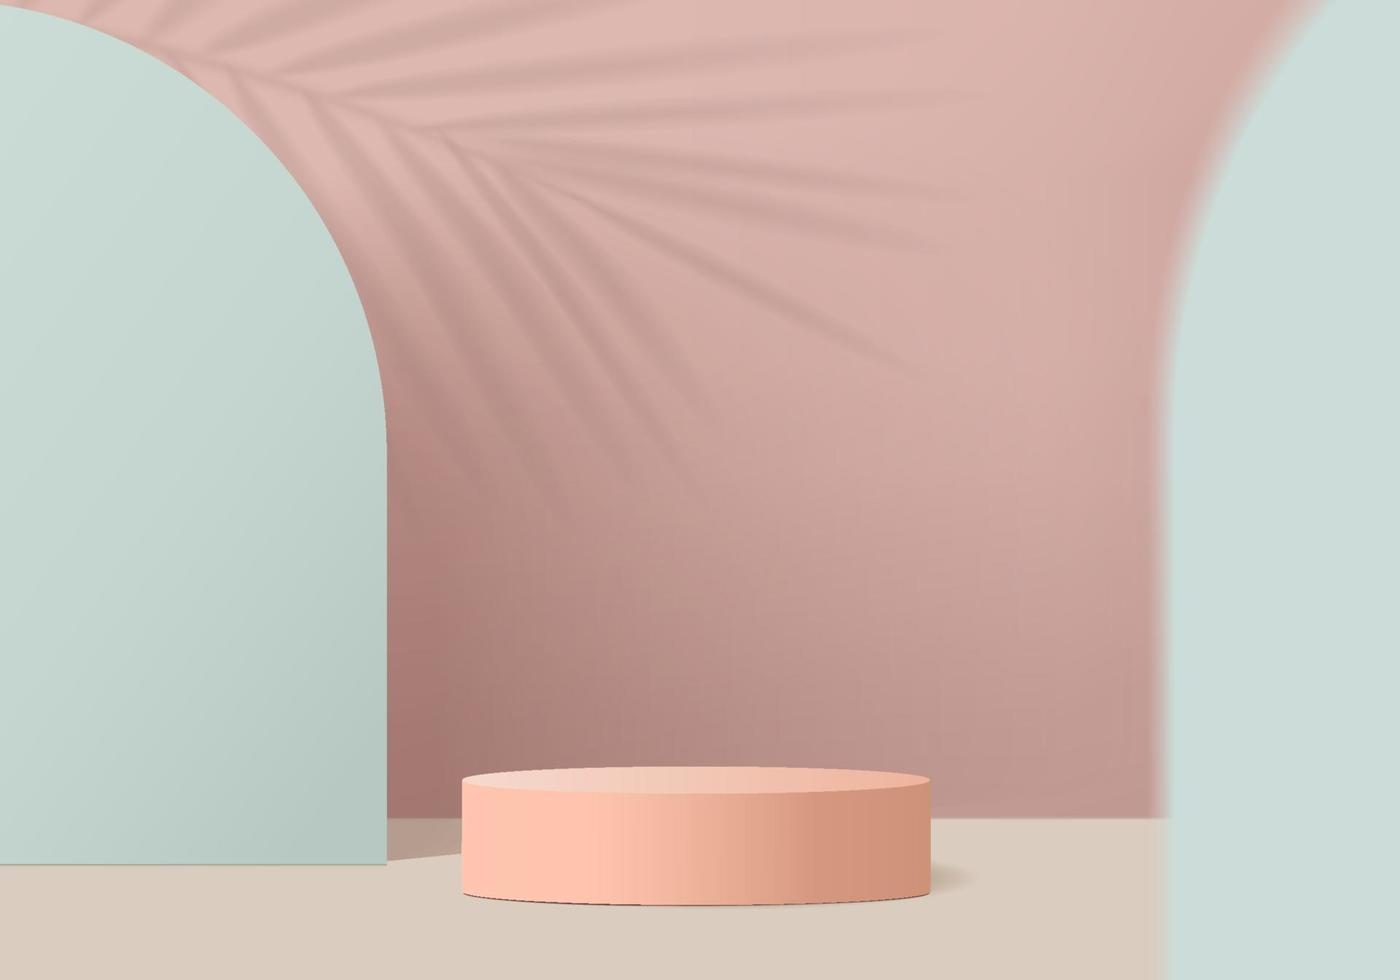 3d abstracte minimale scène van het vertoningsproduct met geometrisch podiumplatform. cilinder achtergrond vector 3D-rendering met podium. staan voor cosmetische producten. etappe showcase op sokkel 3d roze studio